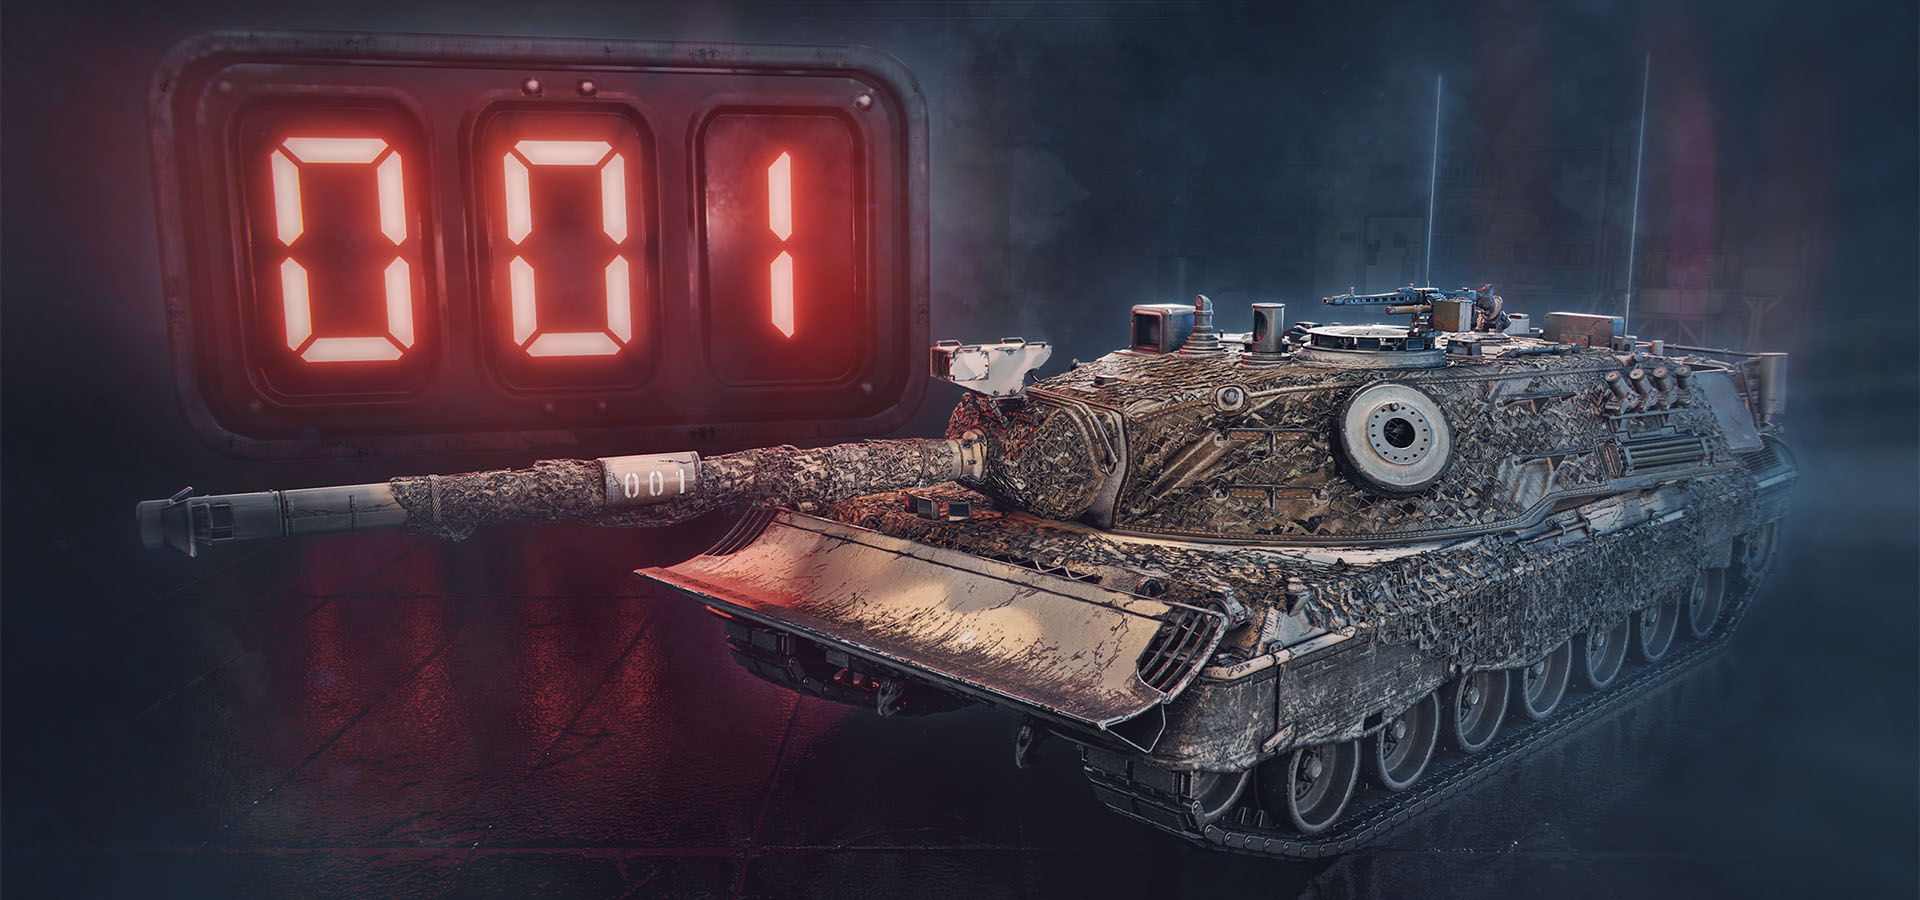 Przygotujcie się do złożenia Kampfpanzer 07 P(E)! - rykoszet.info